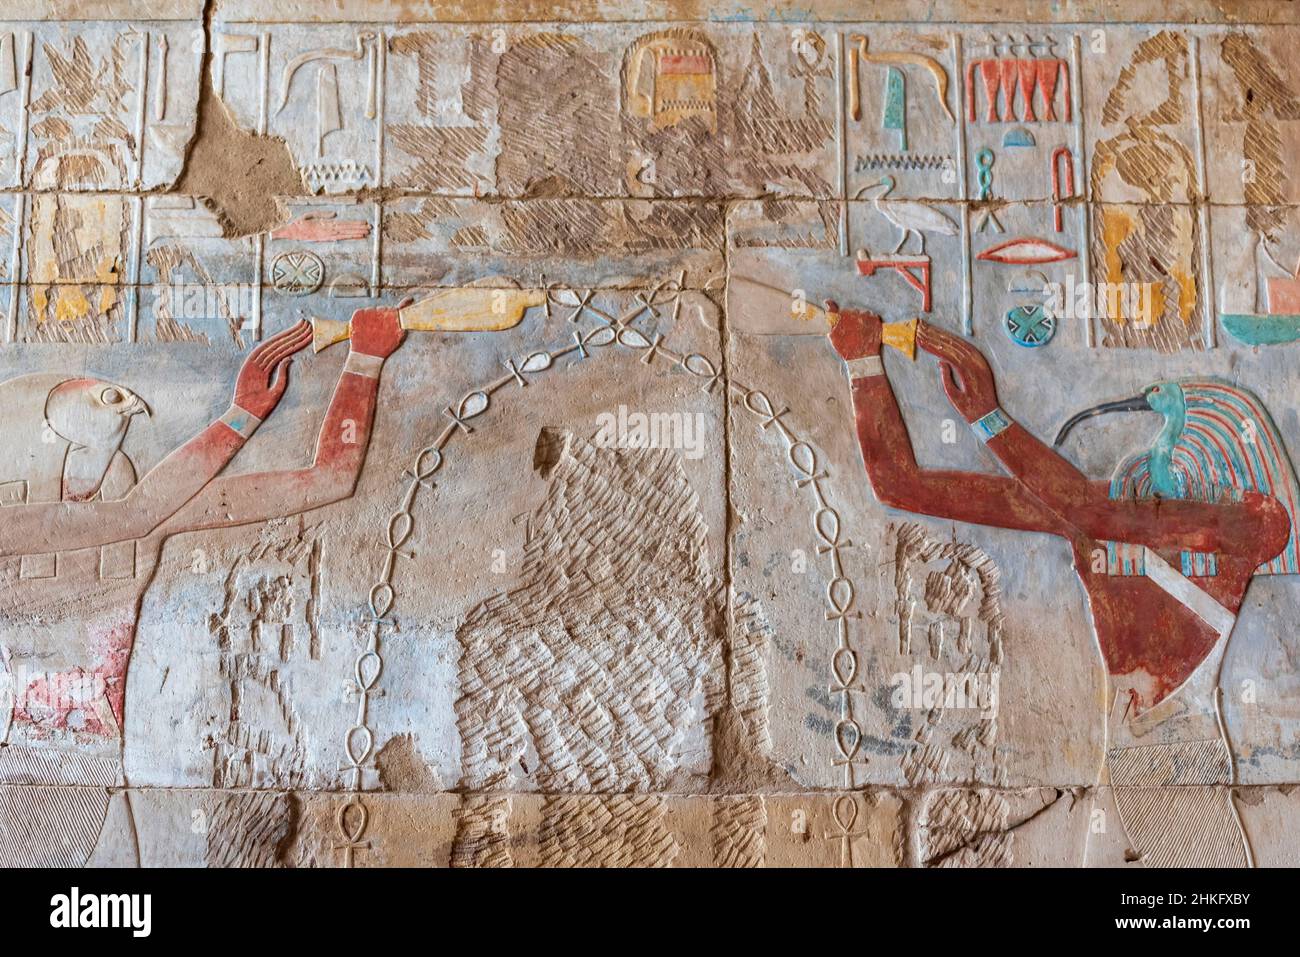 Égypte, haute Égypte, Vallée du Nil, Louxor, Temple de Karnak classé au patrimoine mondial de l'UNESCO, Grand Temple d'Amon, grande salle hypostyle avec 134 piliers de pierre Banque D'Images